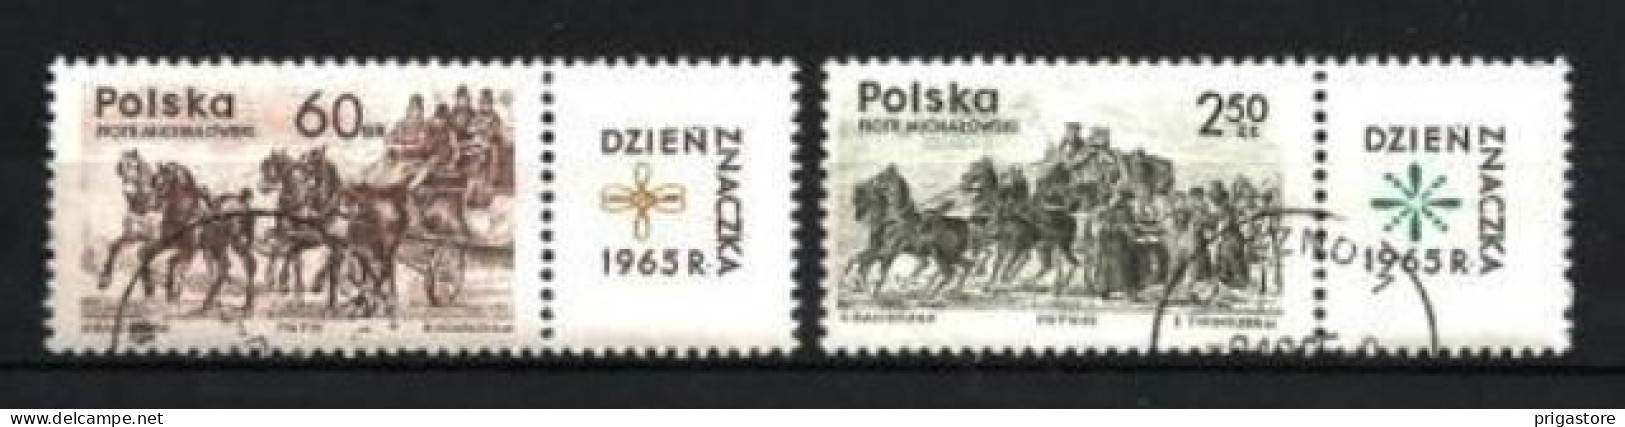 Chevaux Pologne 1965 (41) Yvert N° 1480 + 1481 Oblitéré Used - Pferde